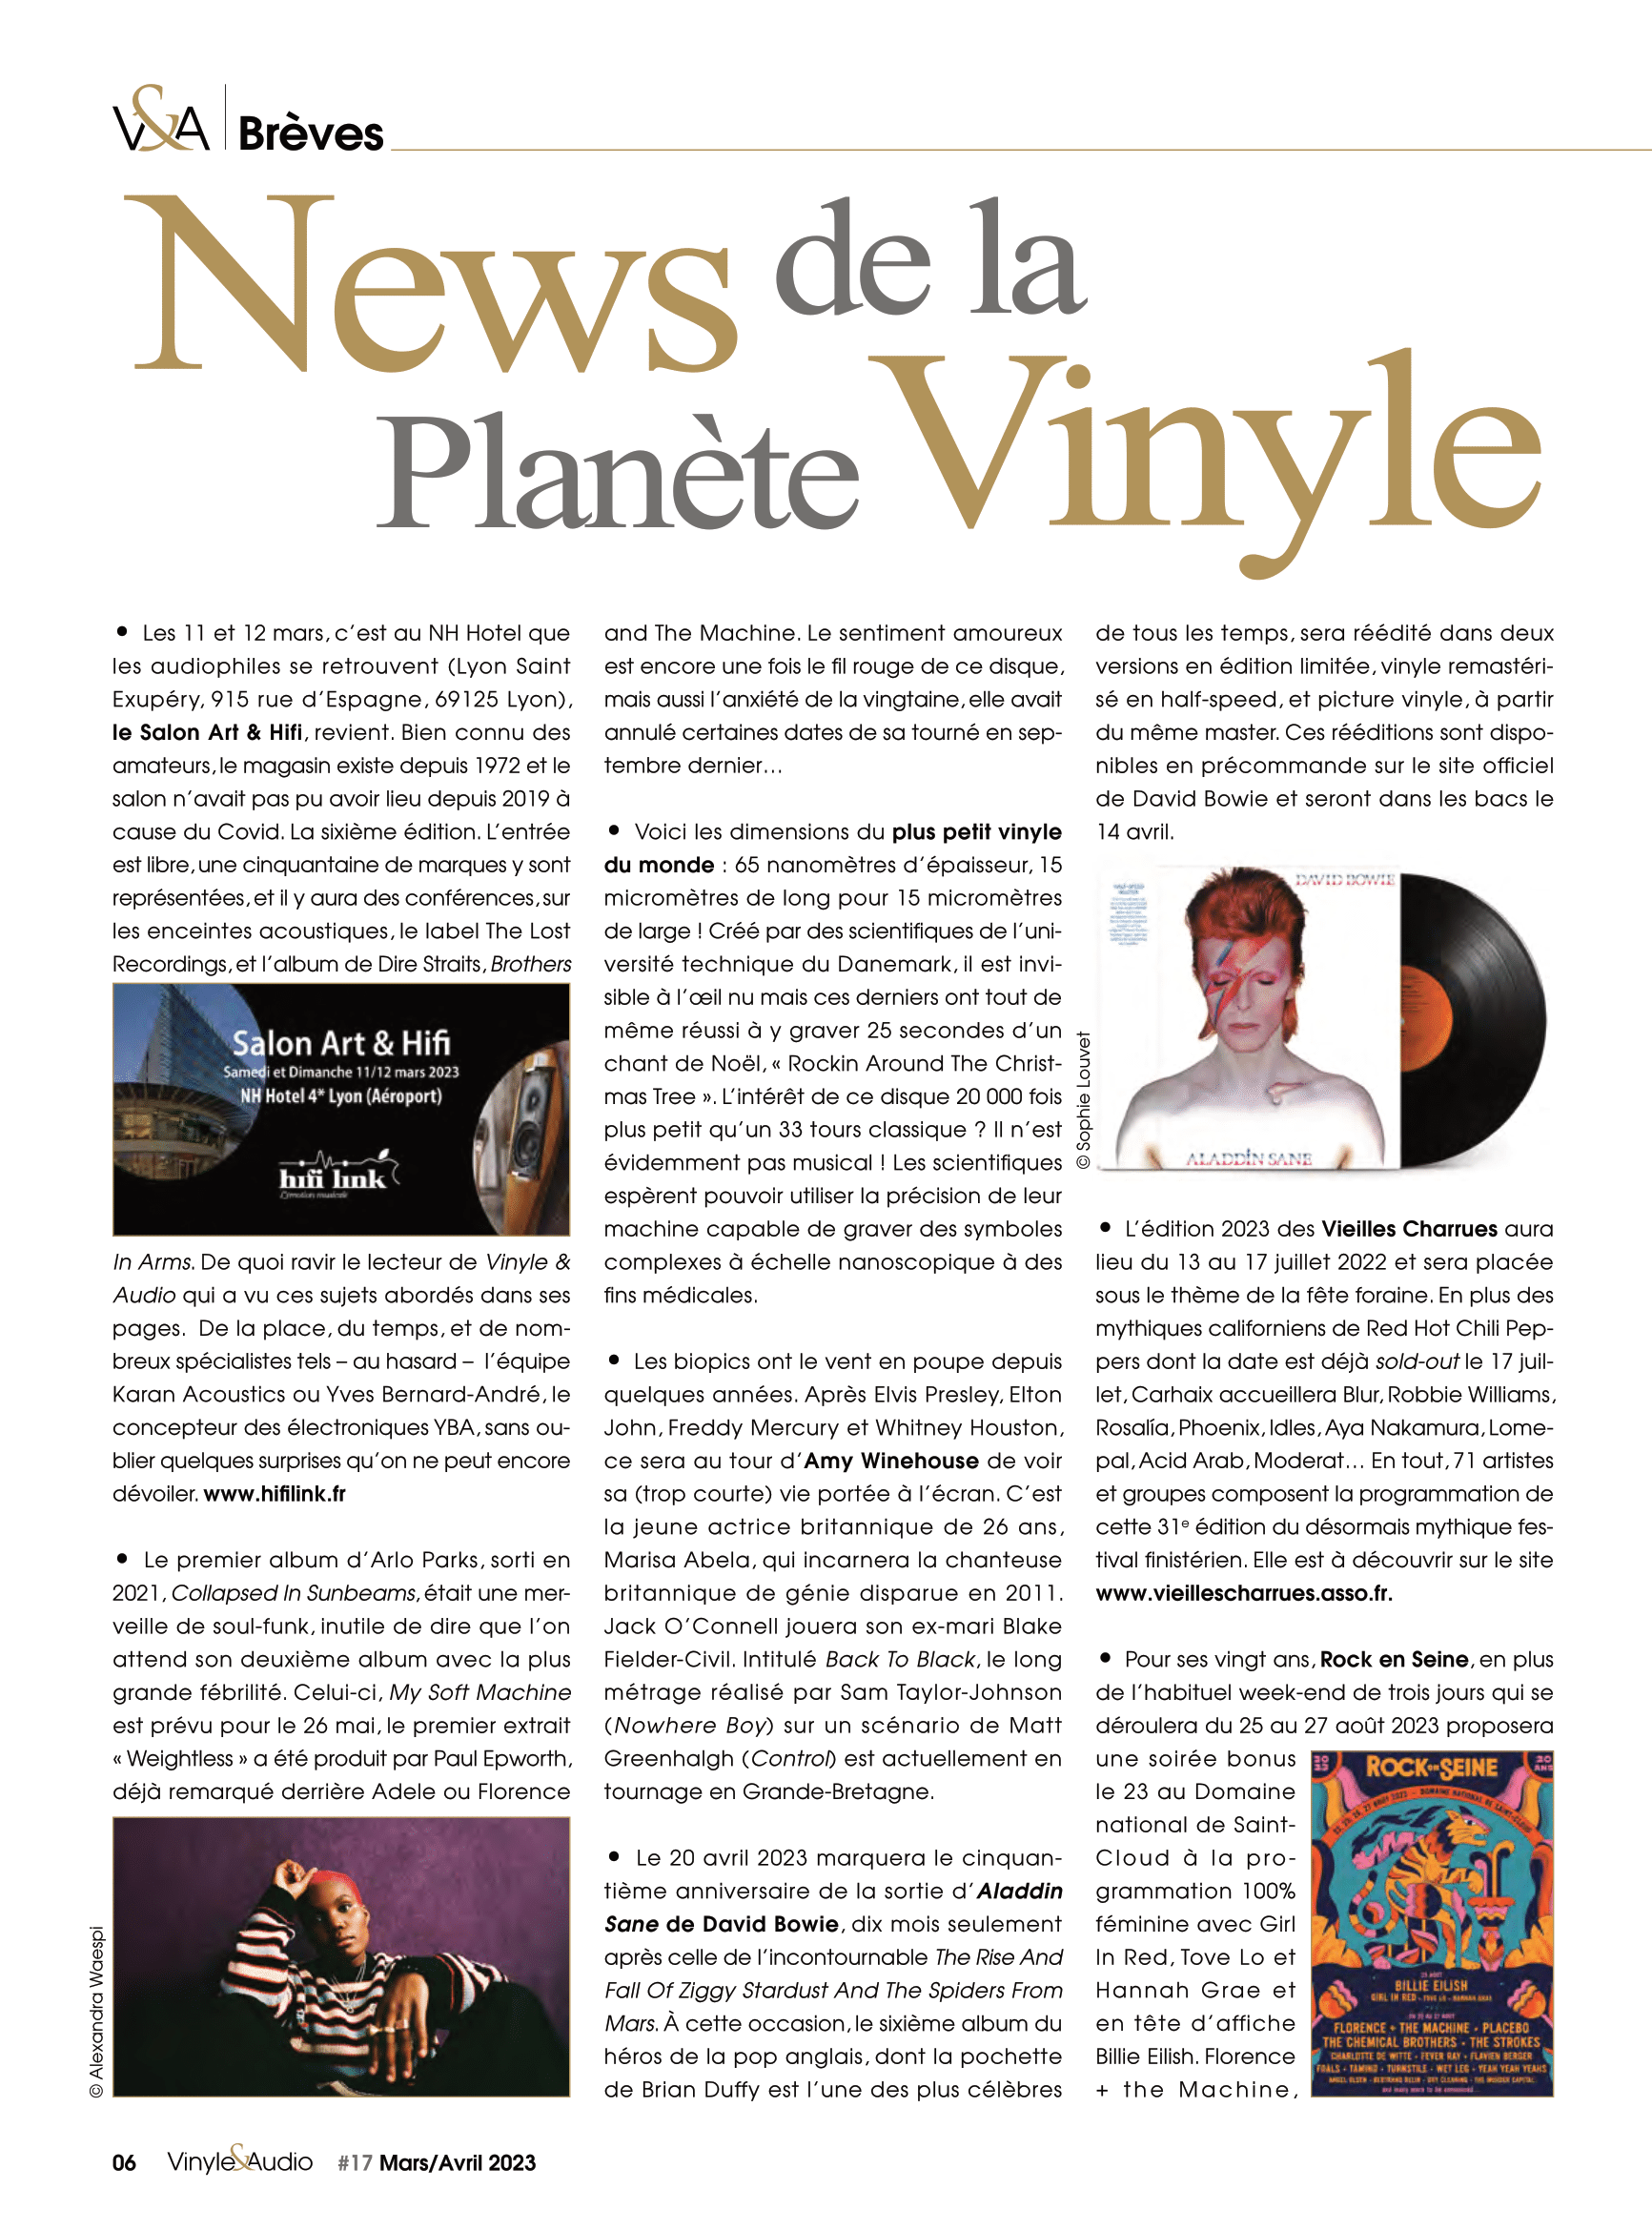 Vinyle & Audio n°17 : News de la Planète Vinyle